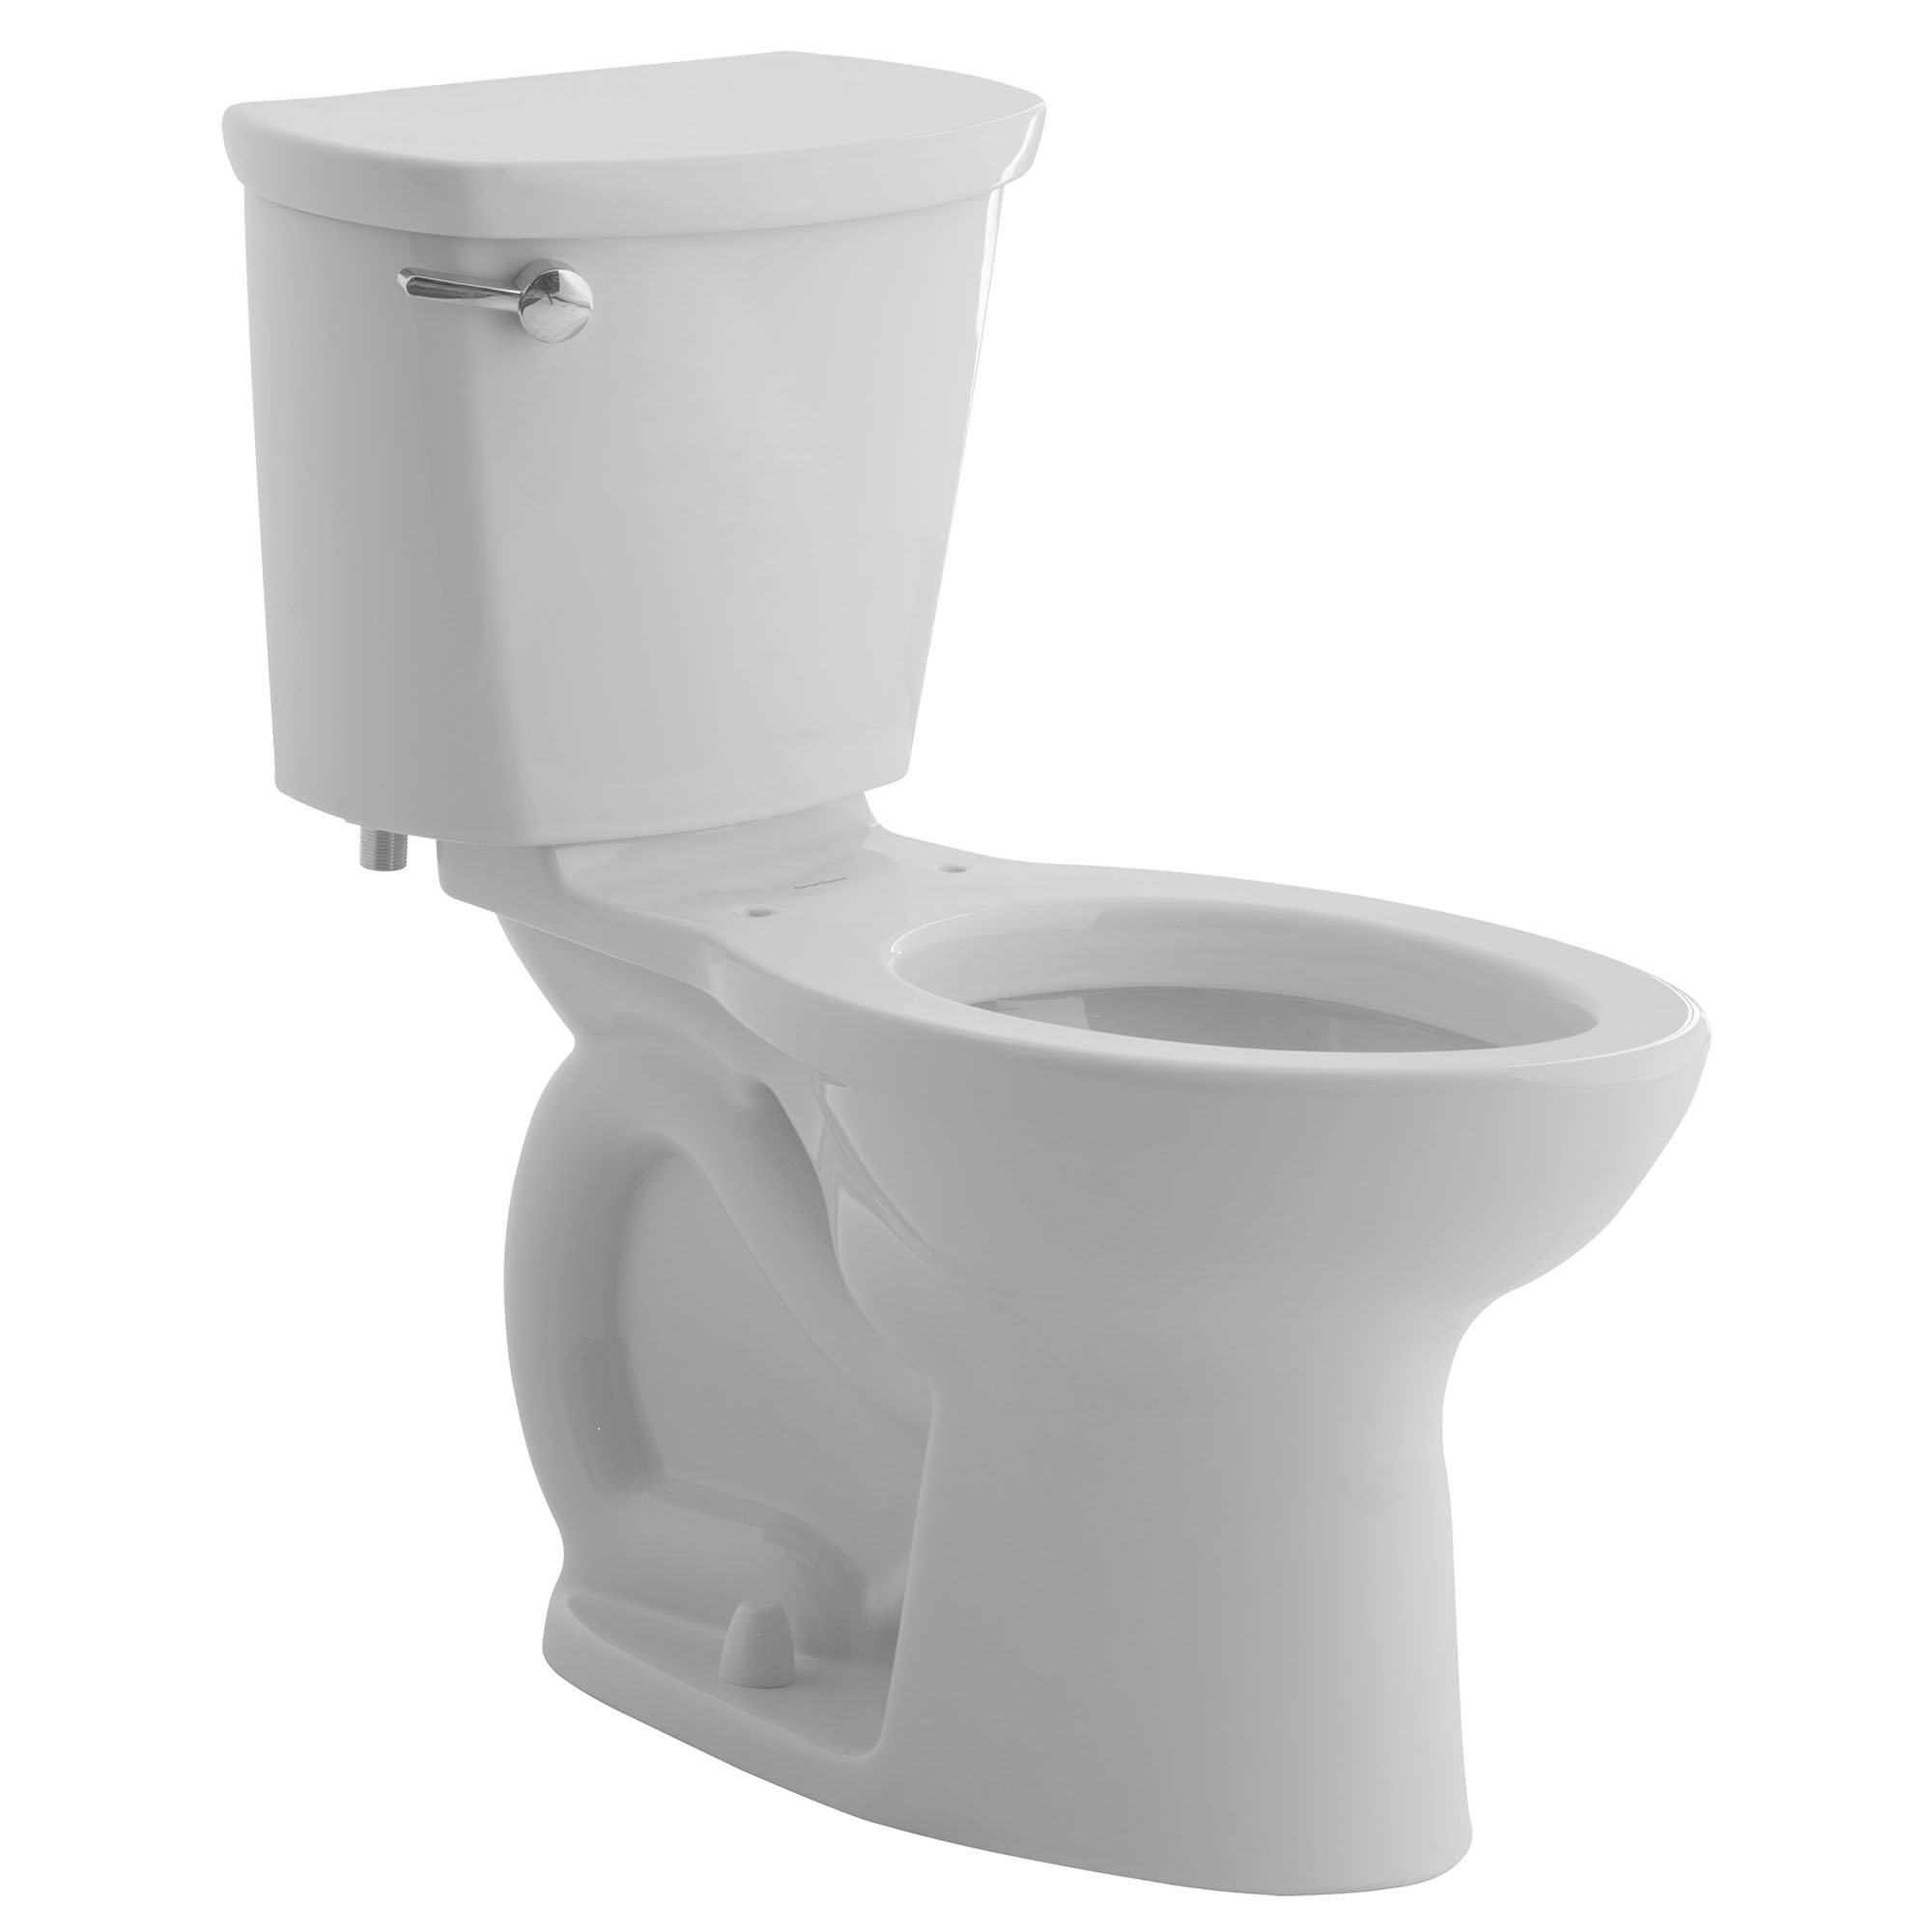 Toilette Cadet PRO, 2 pièces, 1,6 gpc/6,0 lpc, à cuvette allongée à hauteur régulière, sans siège